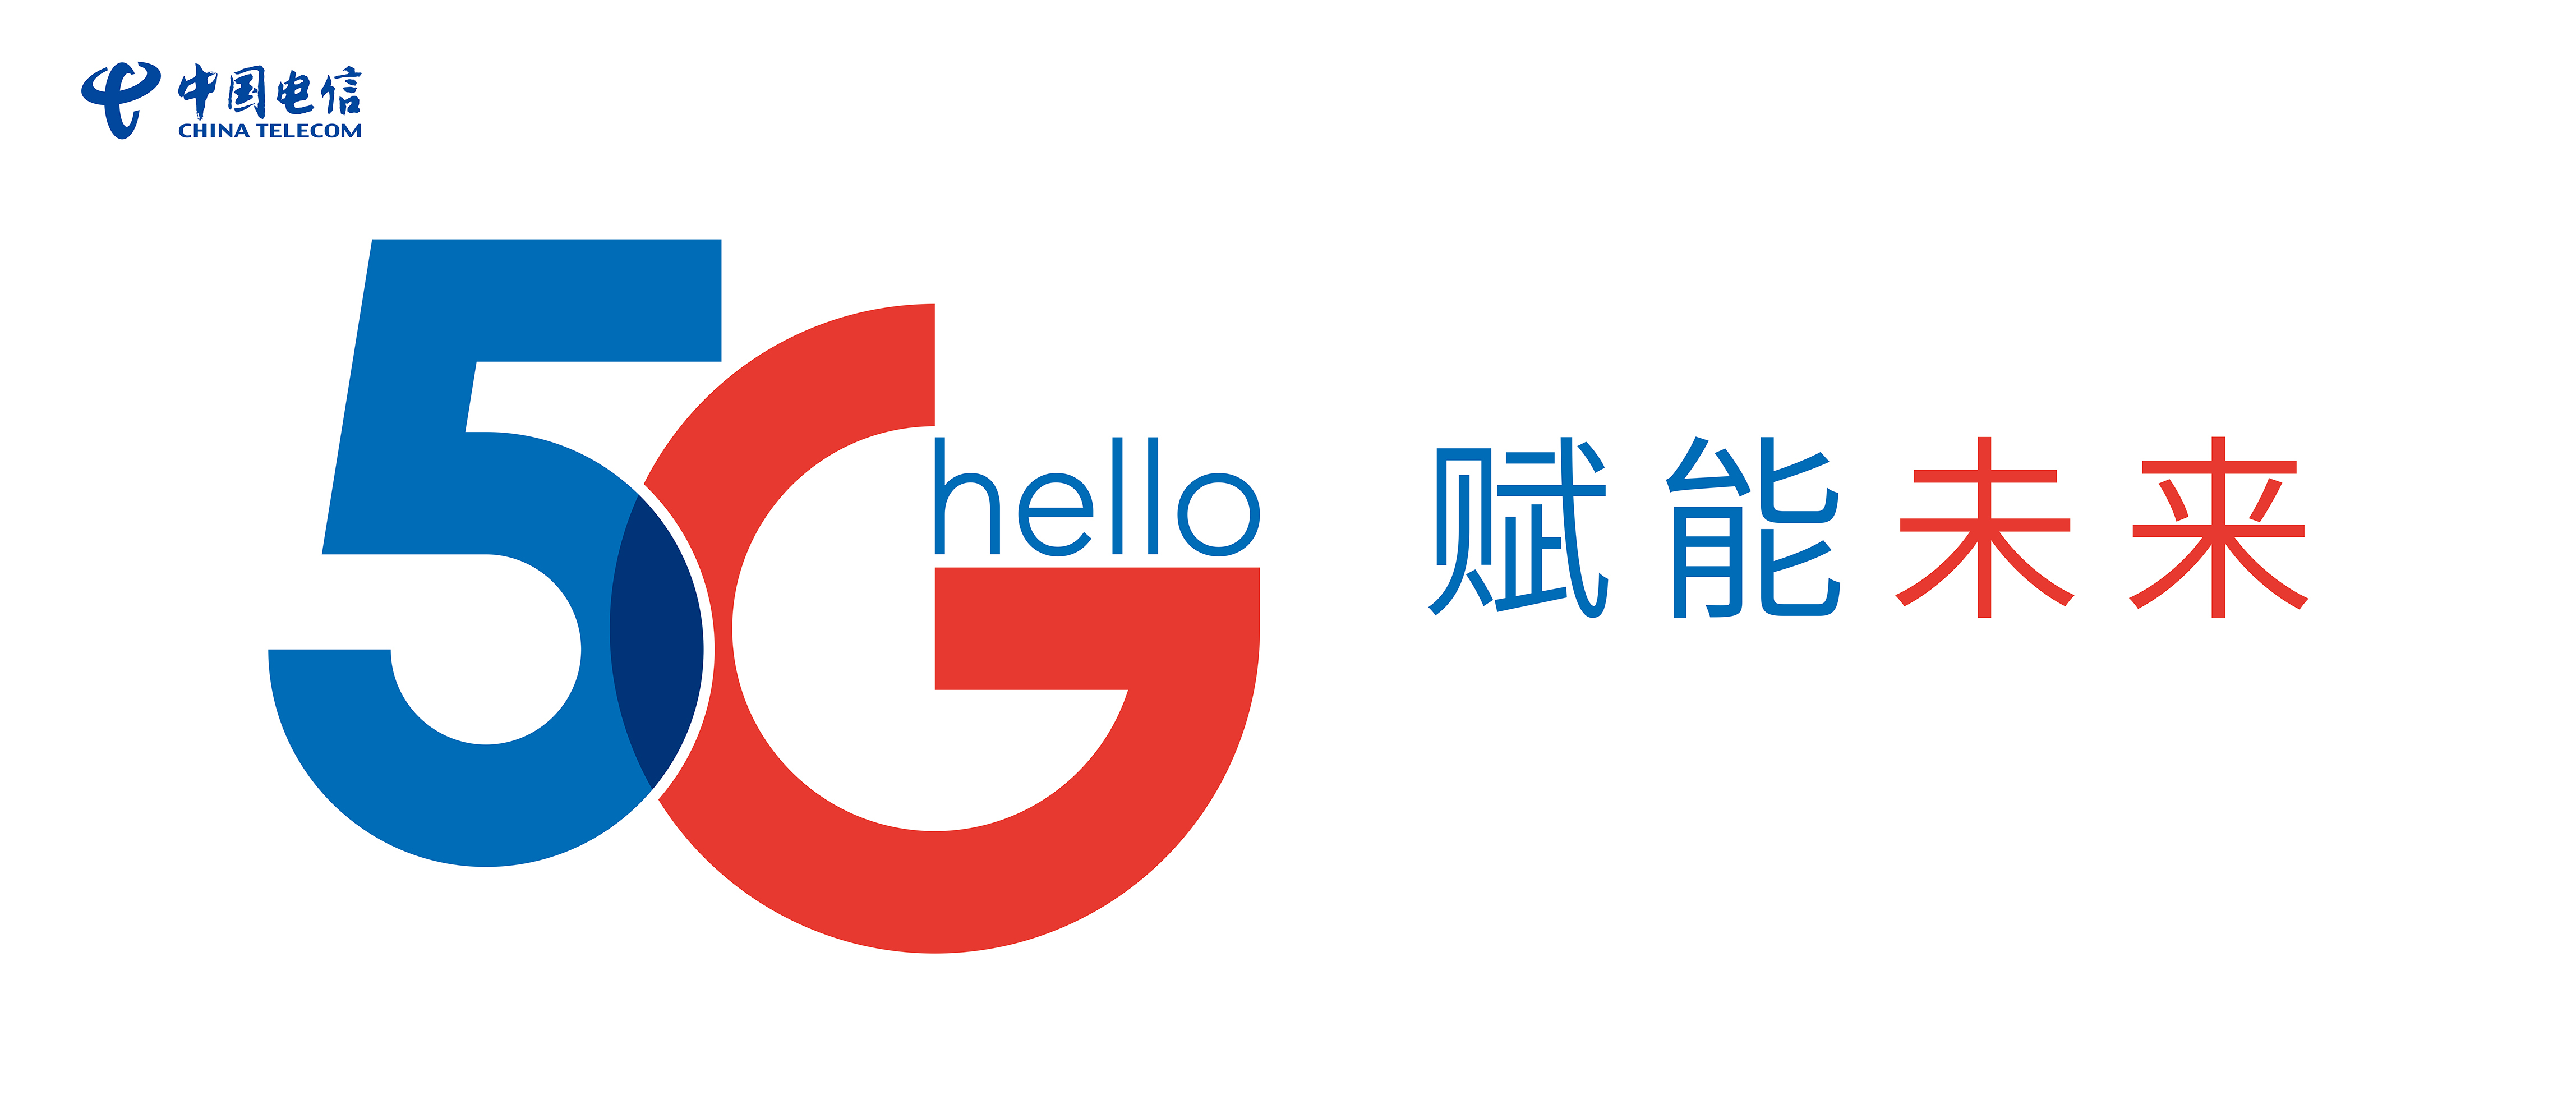 "5g赋能馆"是由中国电信,高通公司,以及中国电信各专业公司组成的